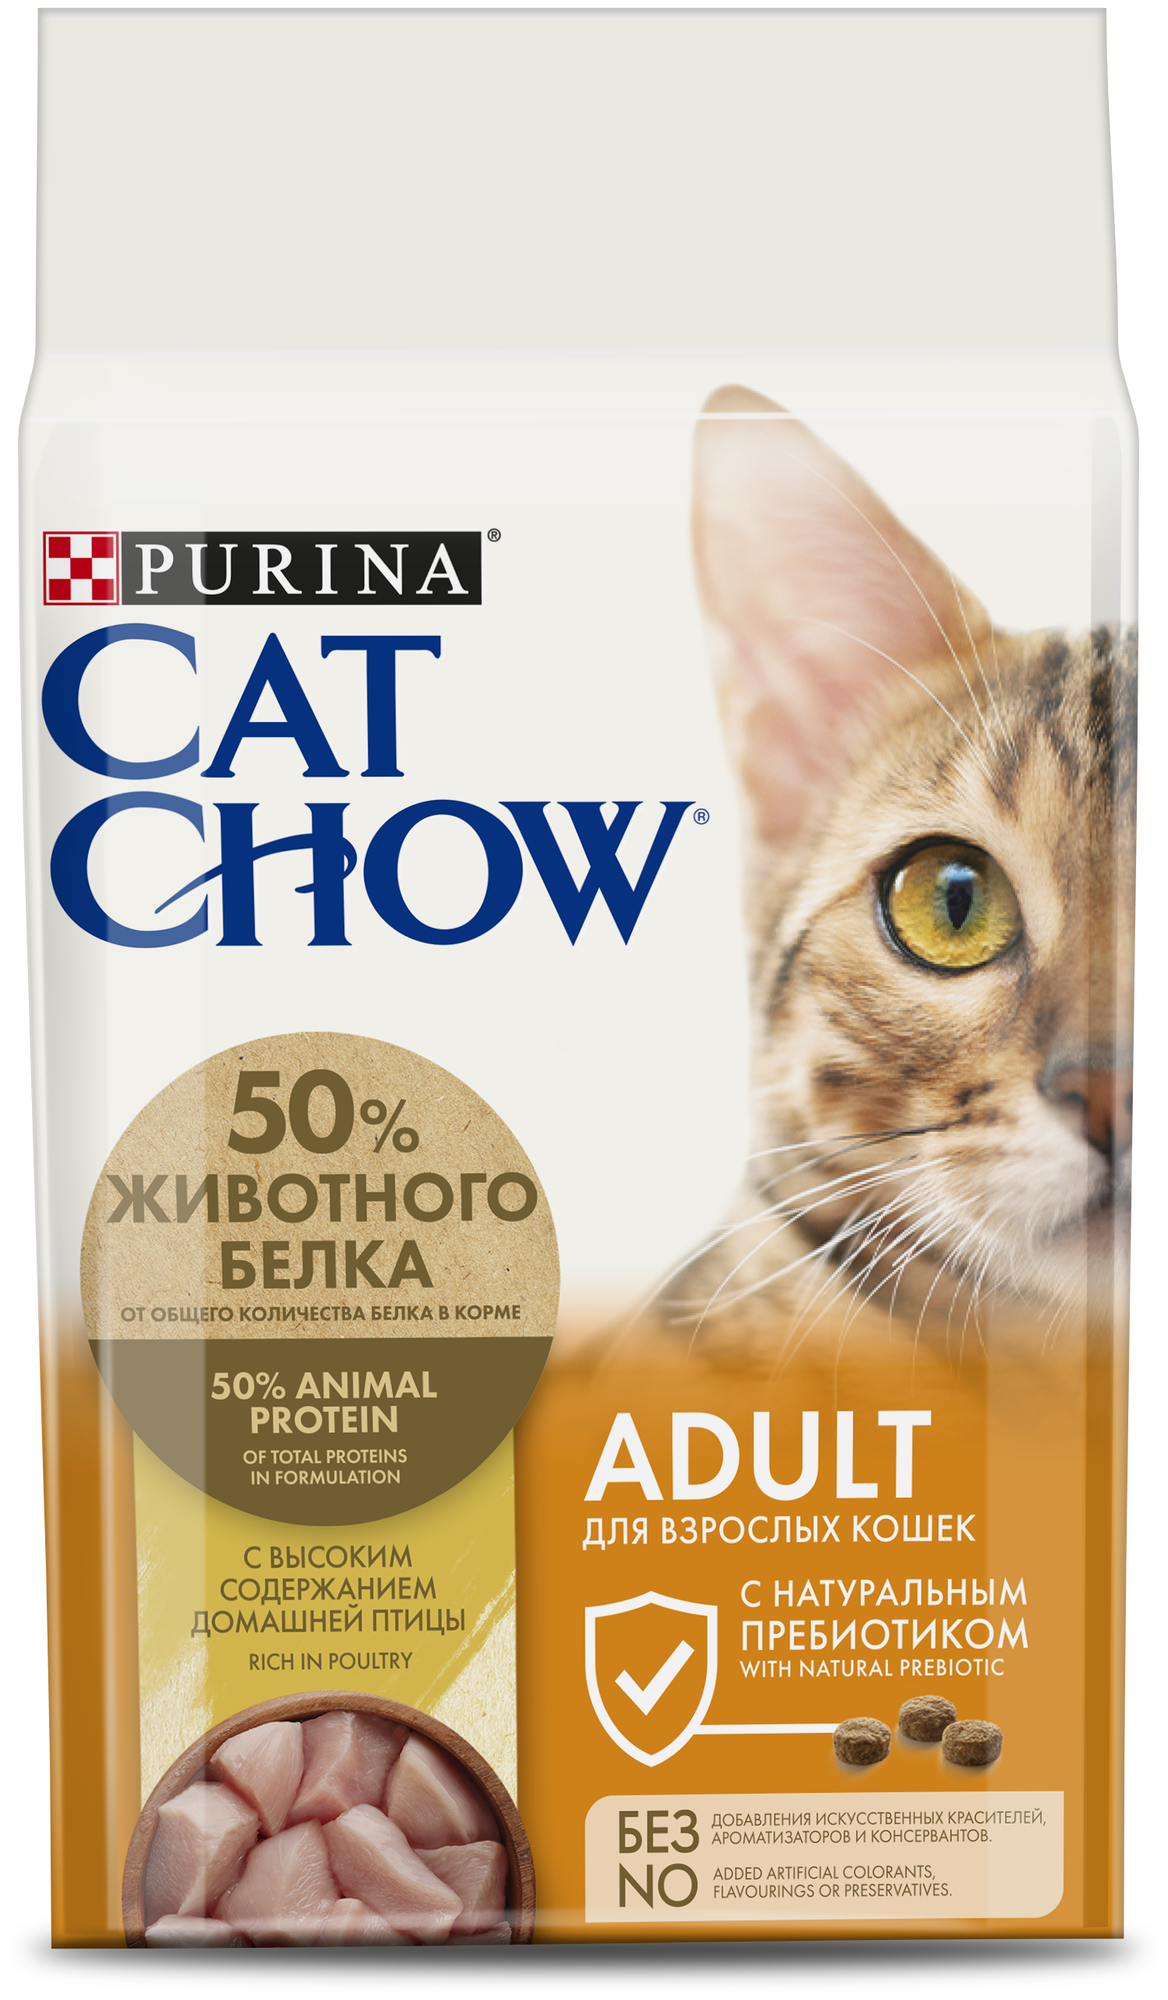 Сухой корм для взрослых кошек Purina Cat Chow Adult, 1.5 кг, домашняя птица